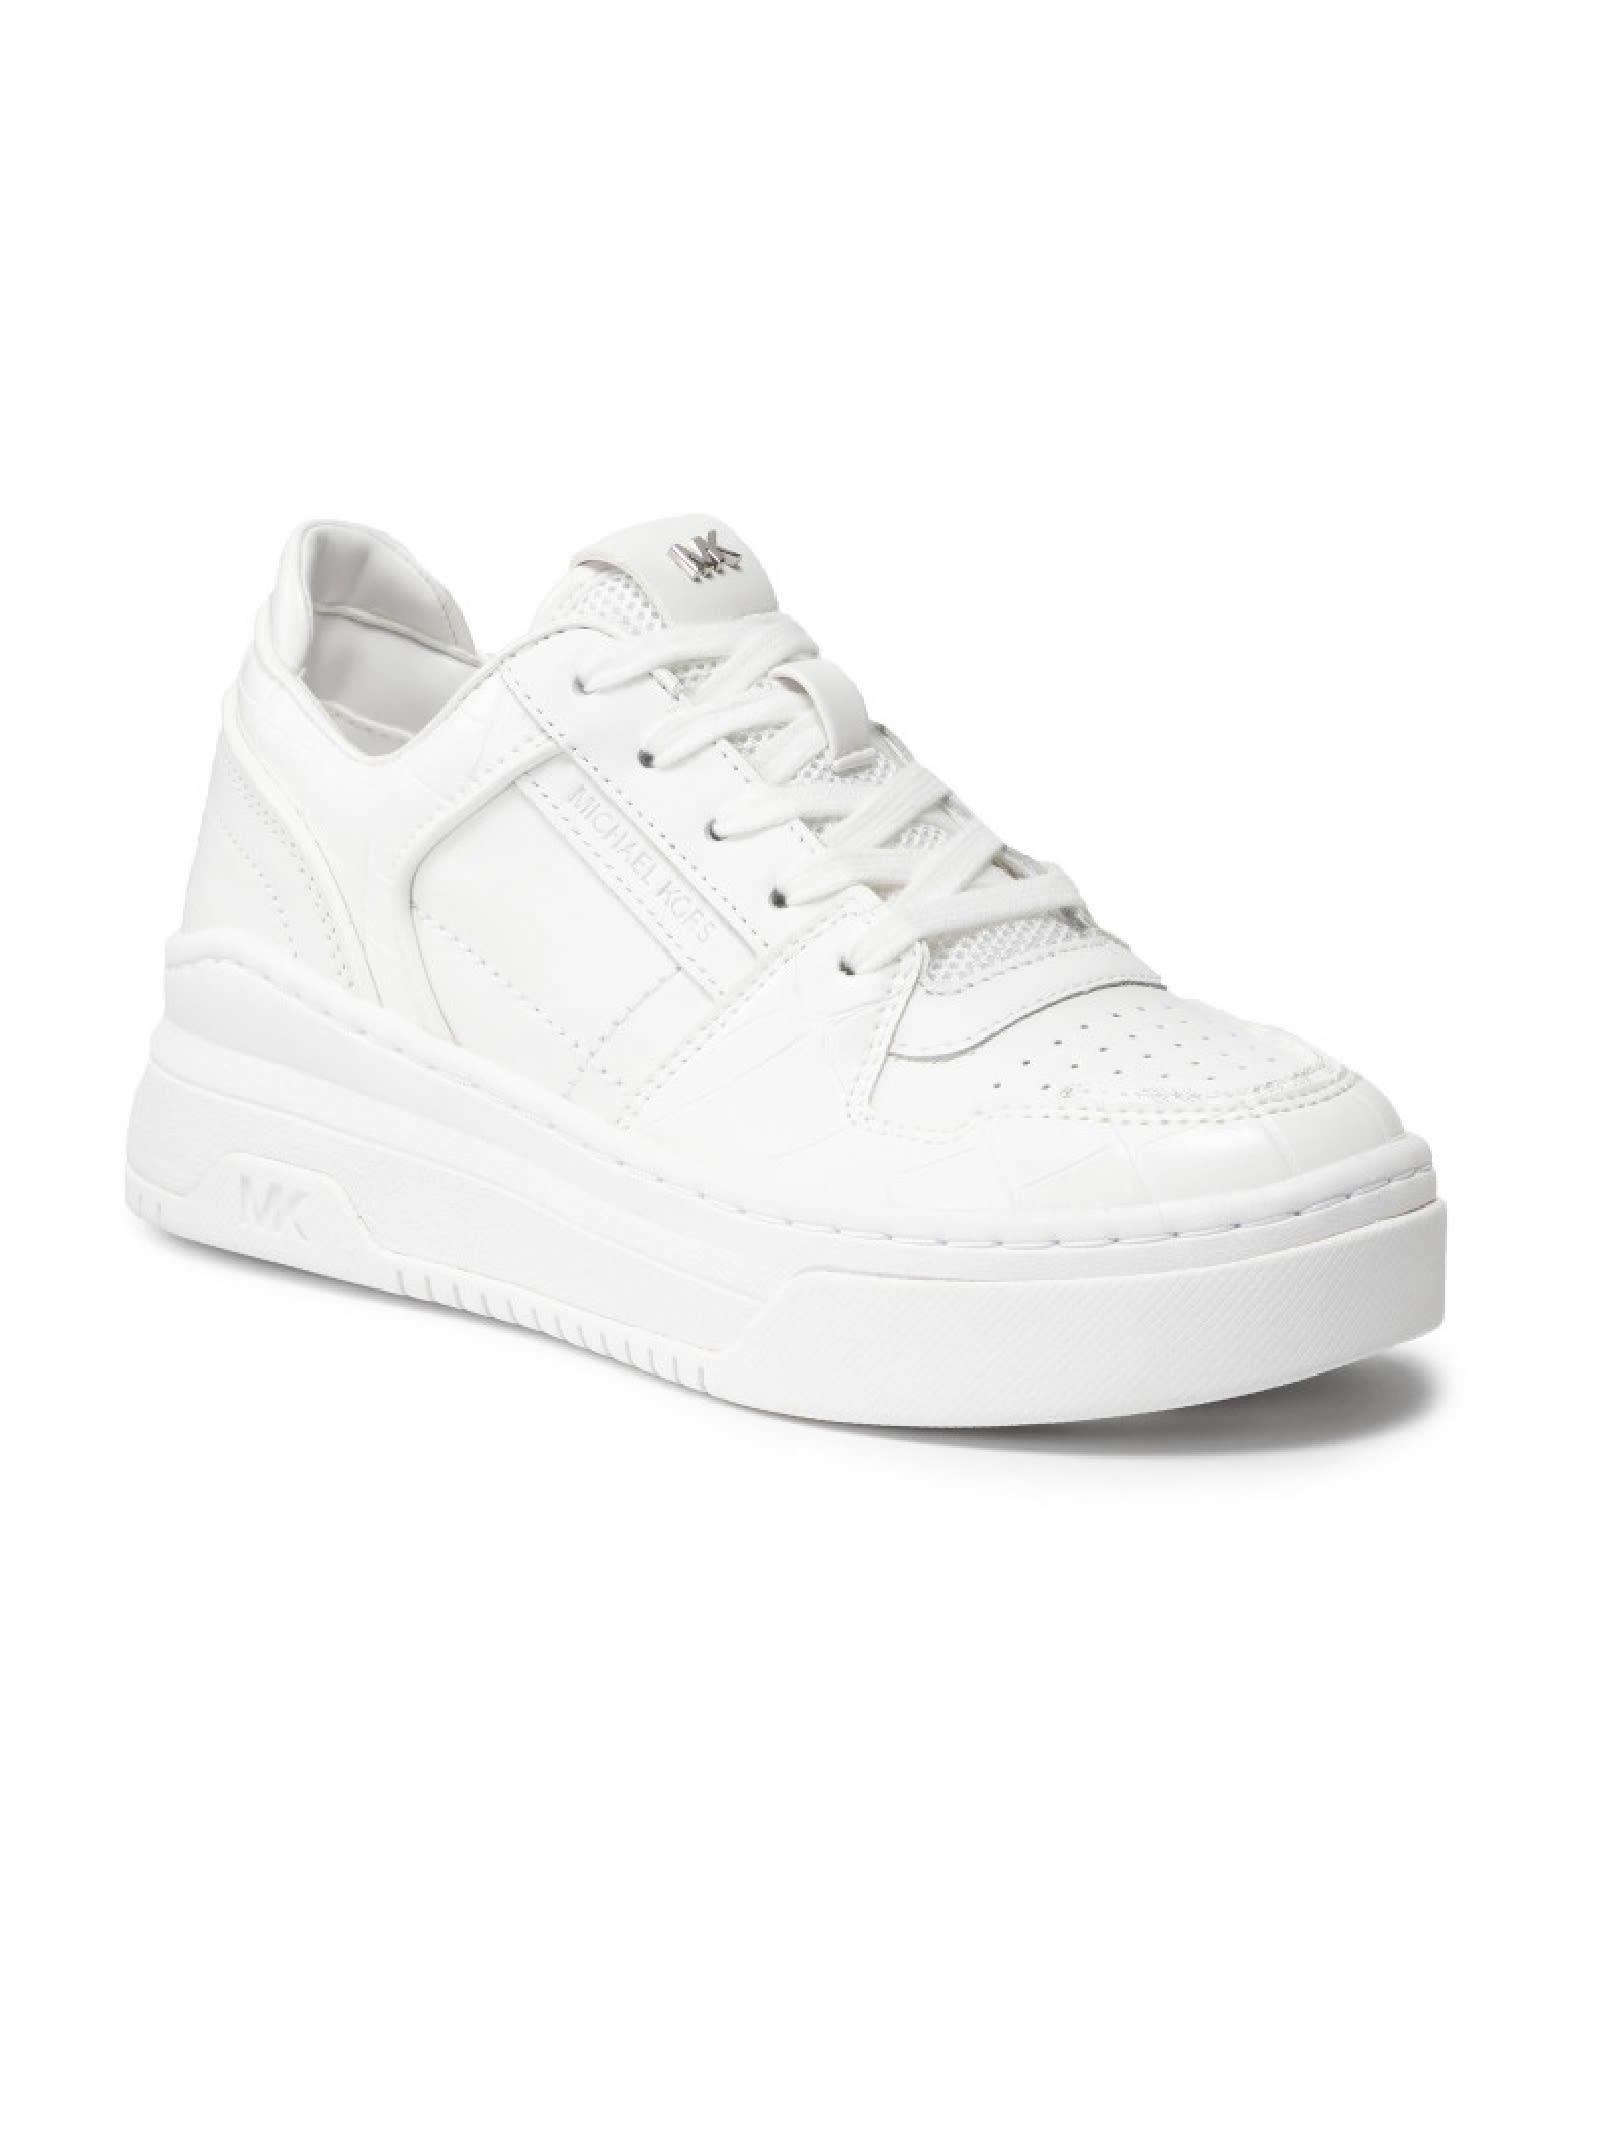 Michael Kors Lexi Sneaker in White | Lyst